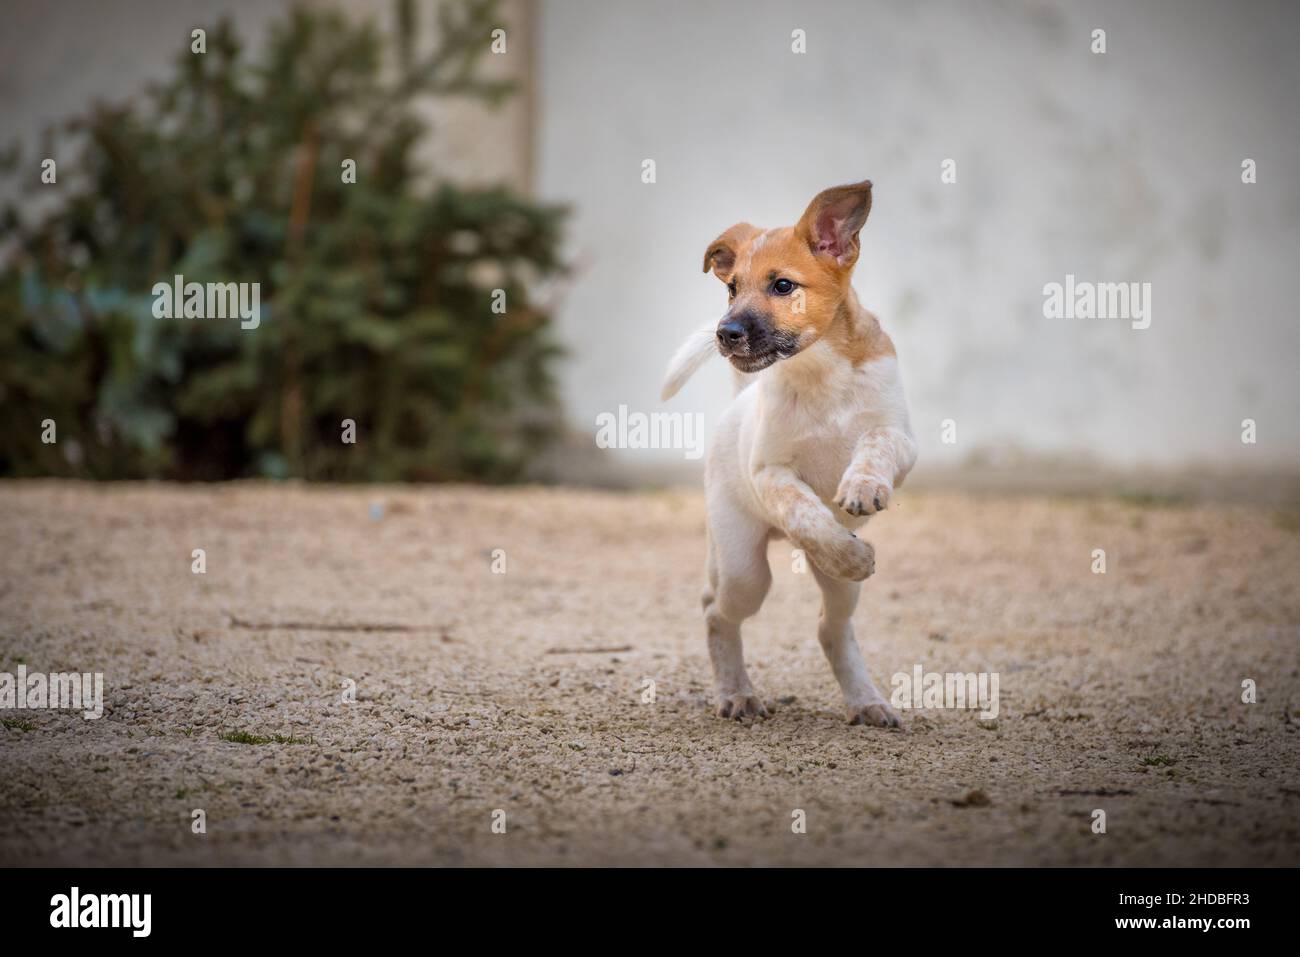 Piccolo cucciolo che salta nel parco. Il piccolo cane del bambino ha una pelliccia bianca-marrone macchiata. Foto Stock